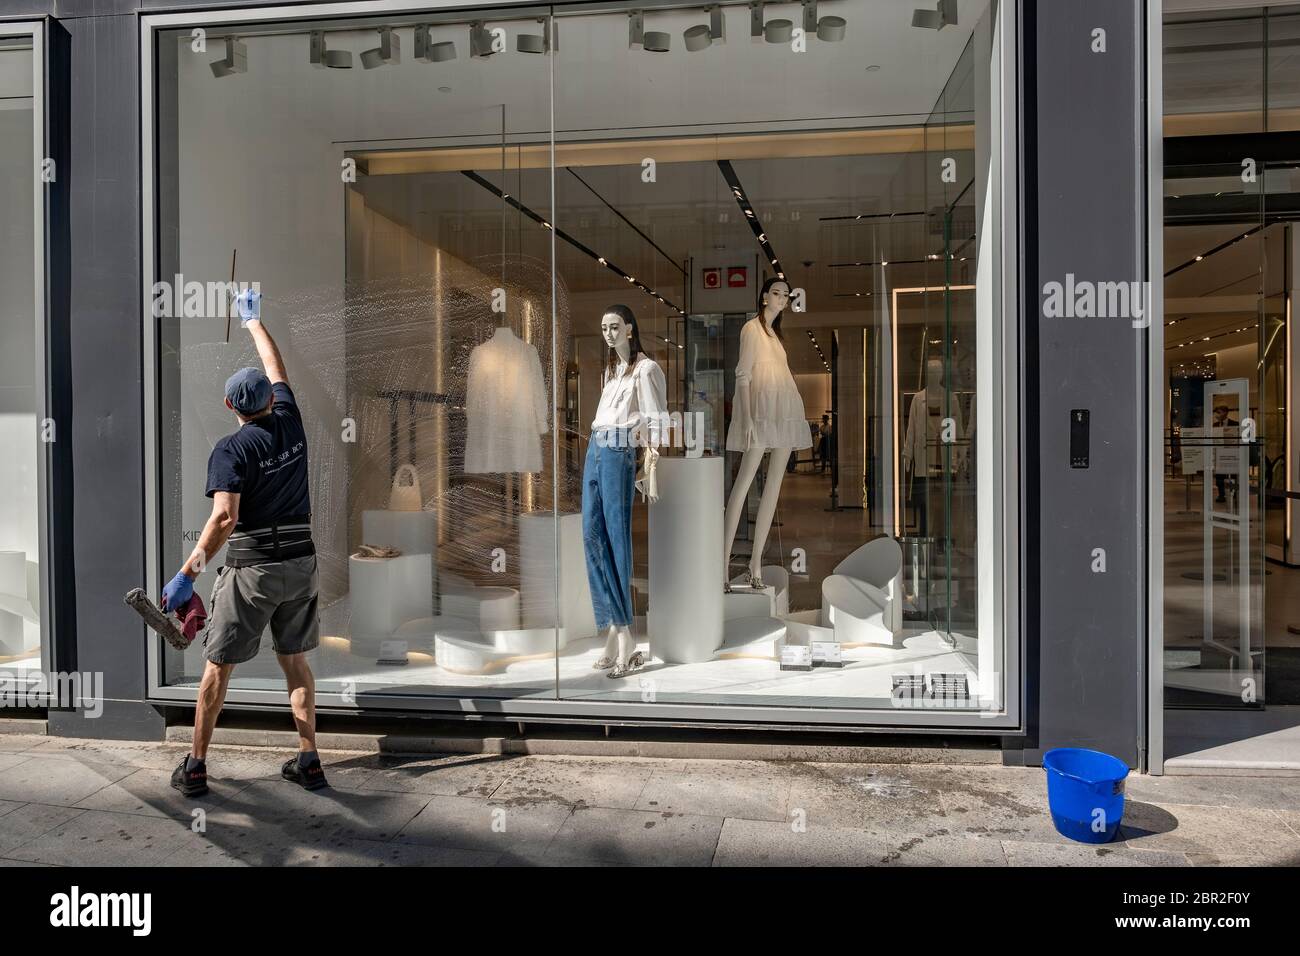 Un homme du service de nettoyage privé Zara / Inditex est vu nettoyer une  fenêtre de magasin.les petites et moyennes entreprises de vente au détail à  Barcelone se préparent à gérer les